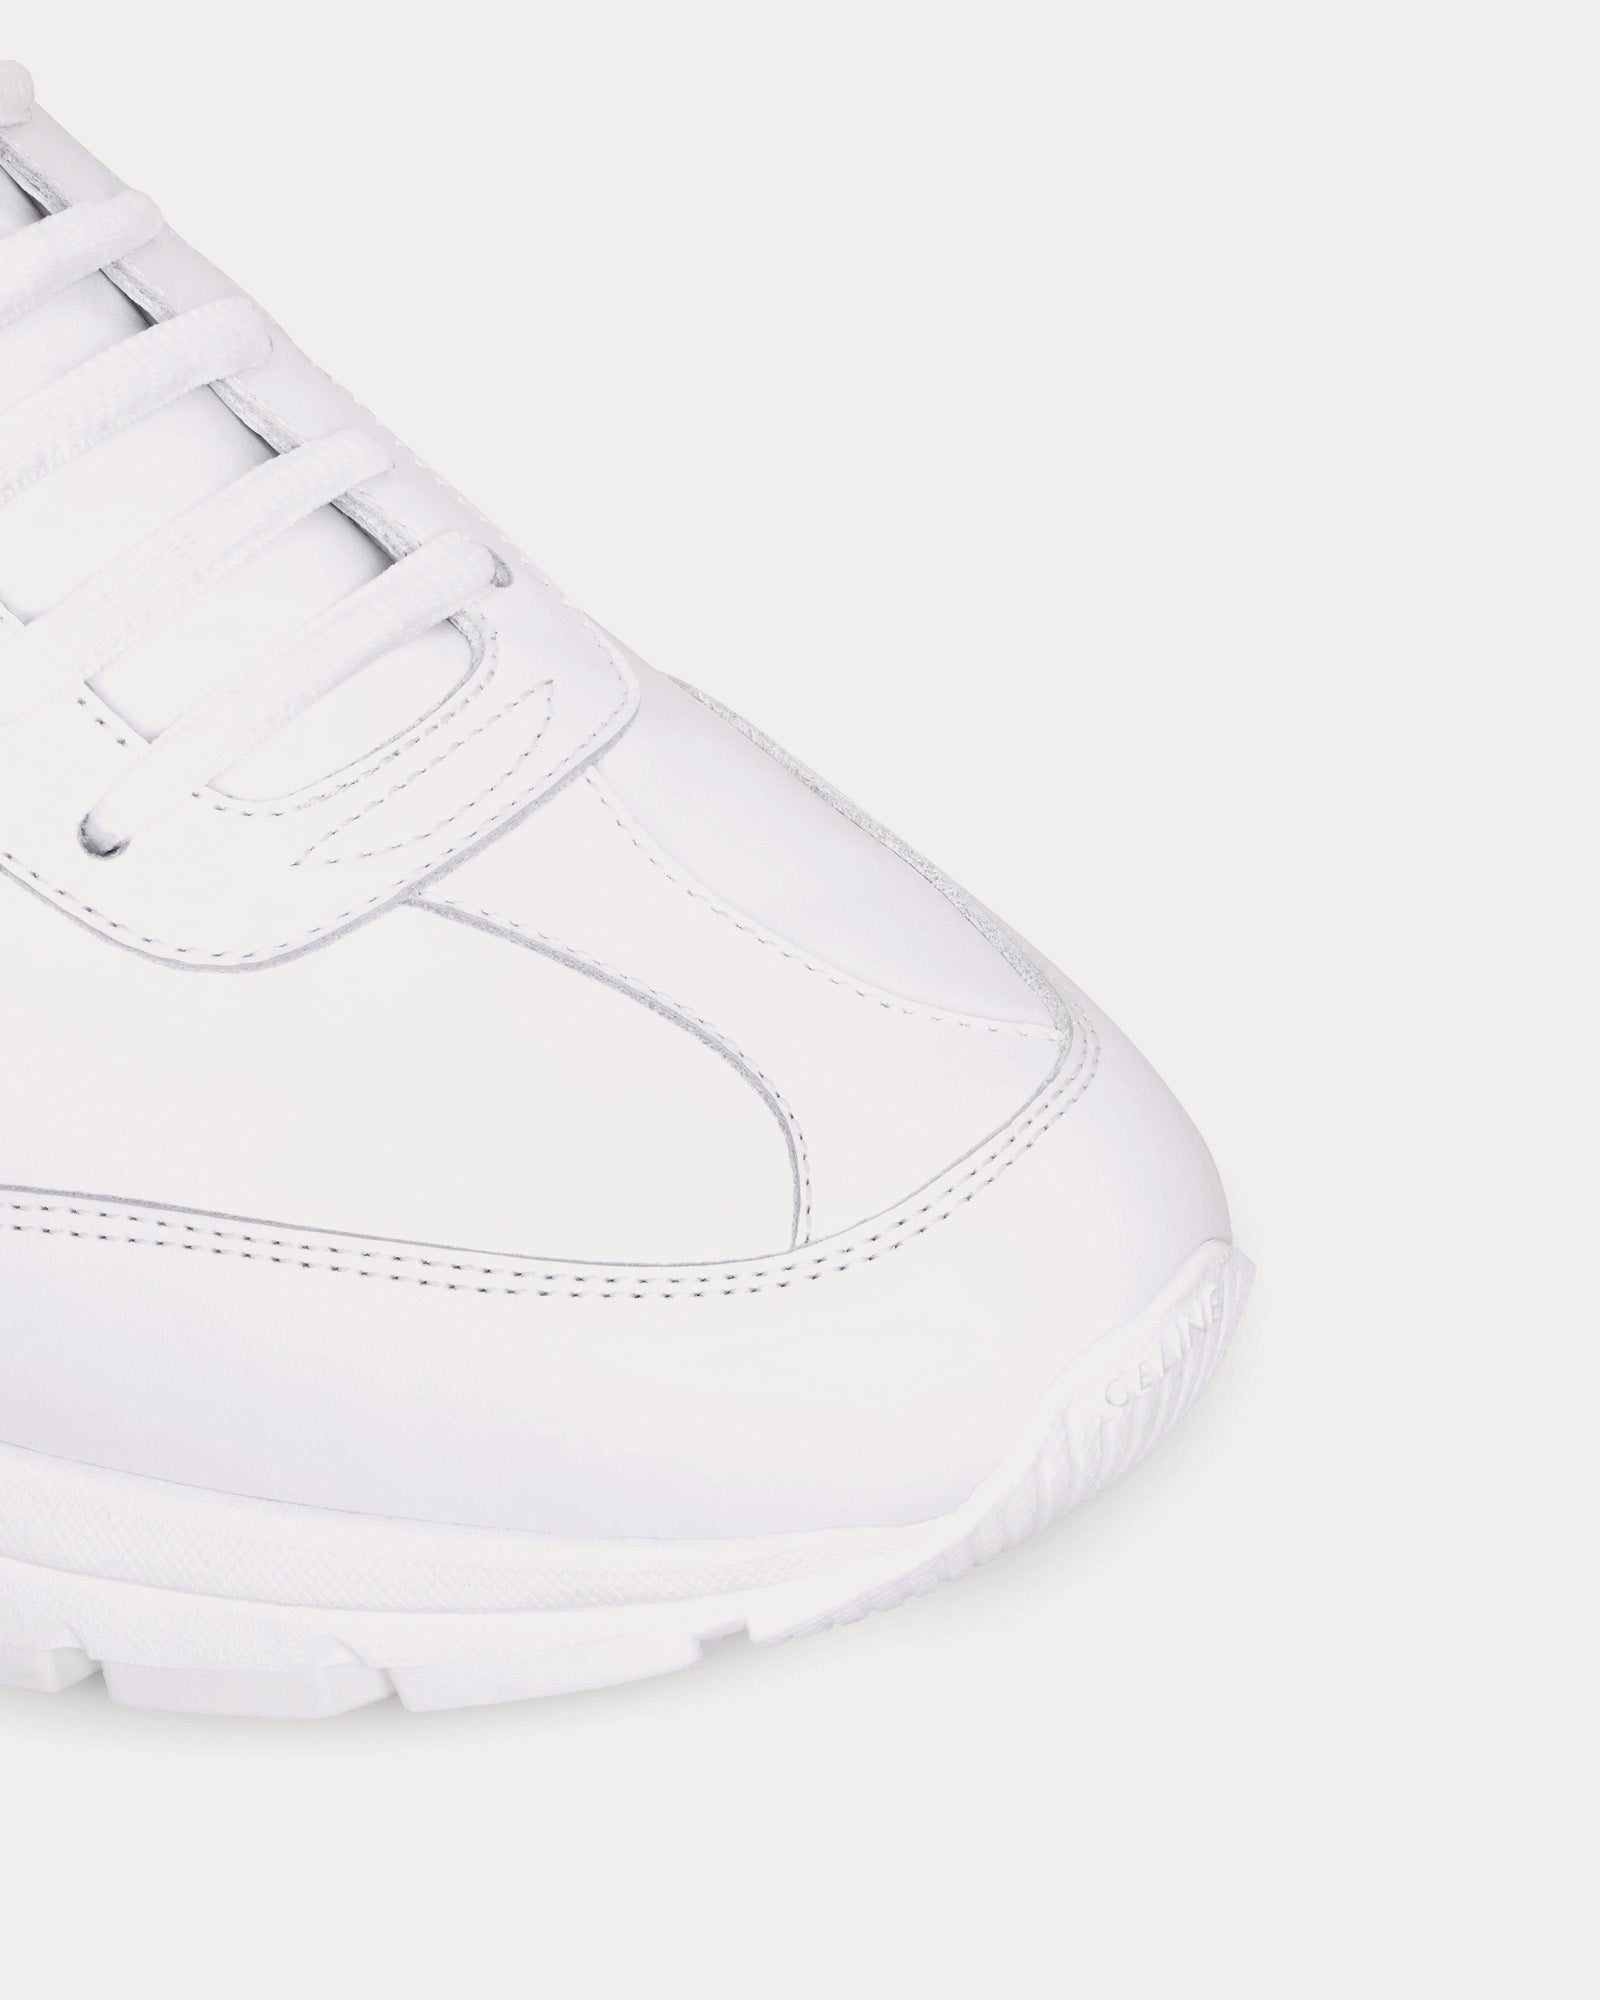 Celine - CR-02 Runner Optic White / Black Low Top Sneakers